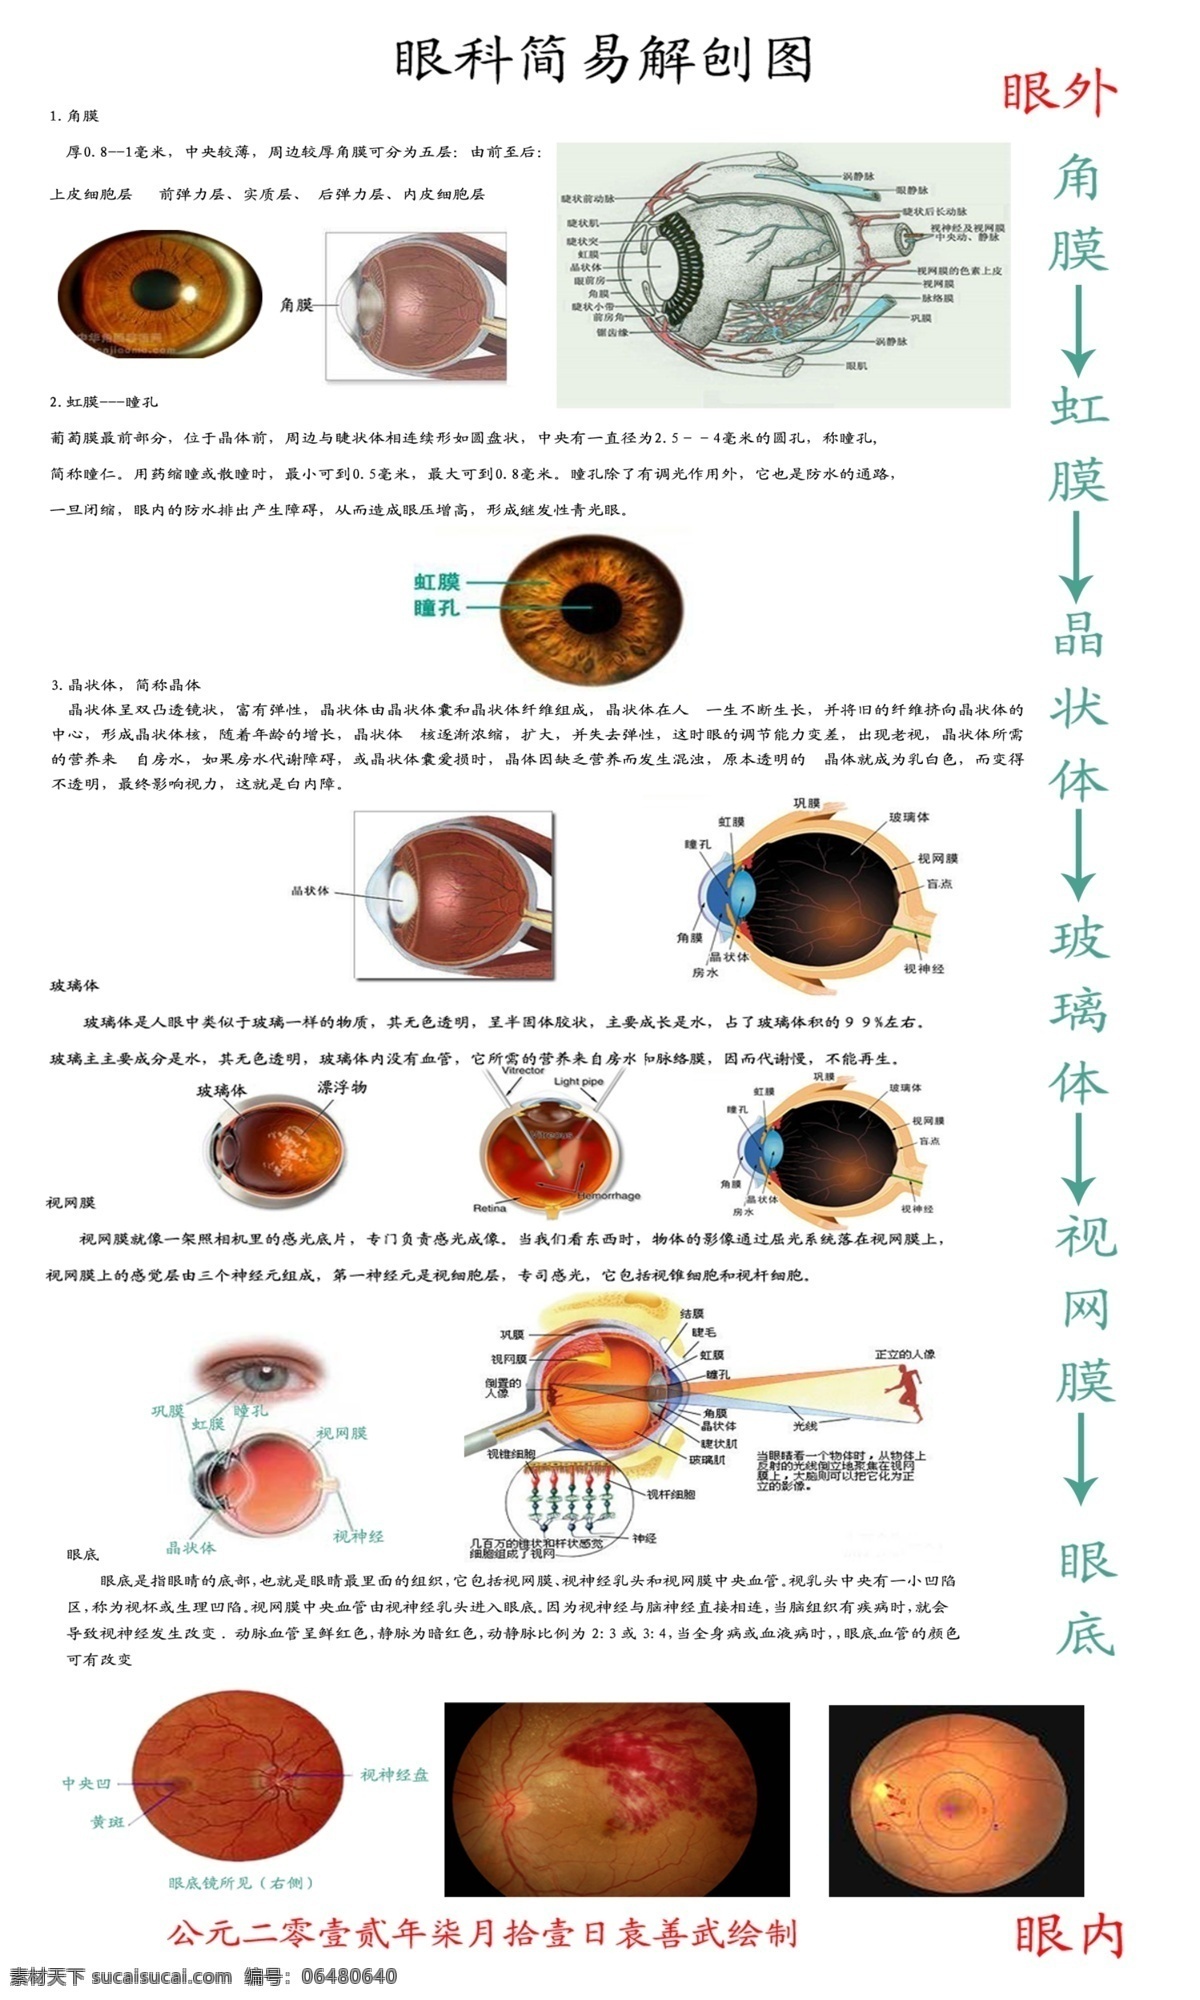 眼科 简易 解 刨 图 角膜 虹膜 瞳孔 晶状体 玻璃体 视网膜 眼底 广告设计模板 源文件